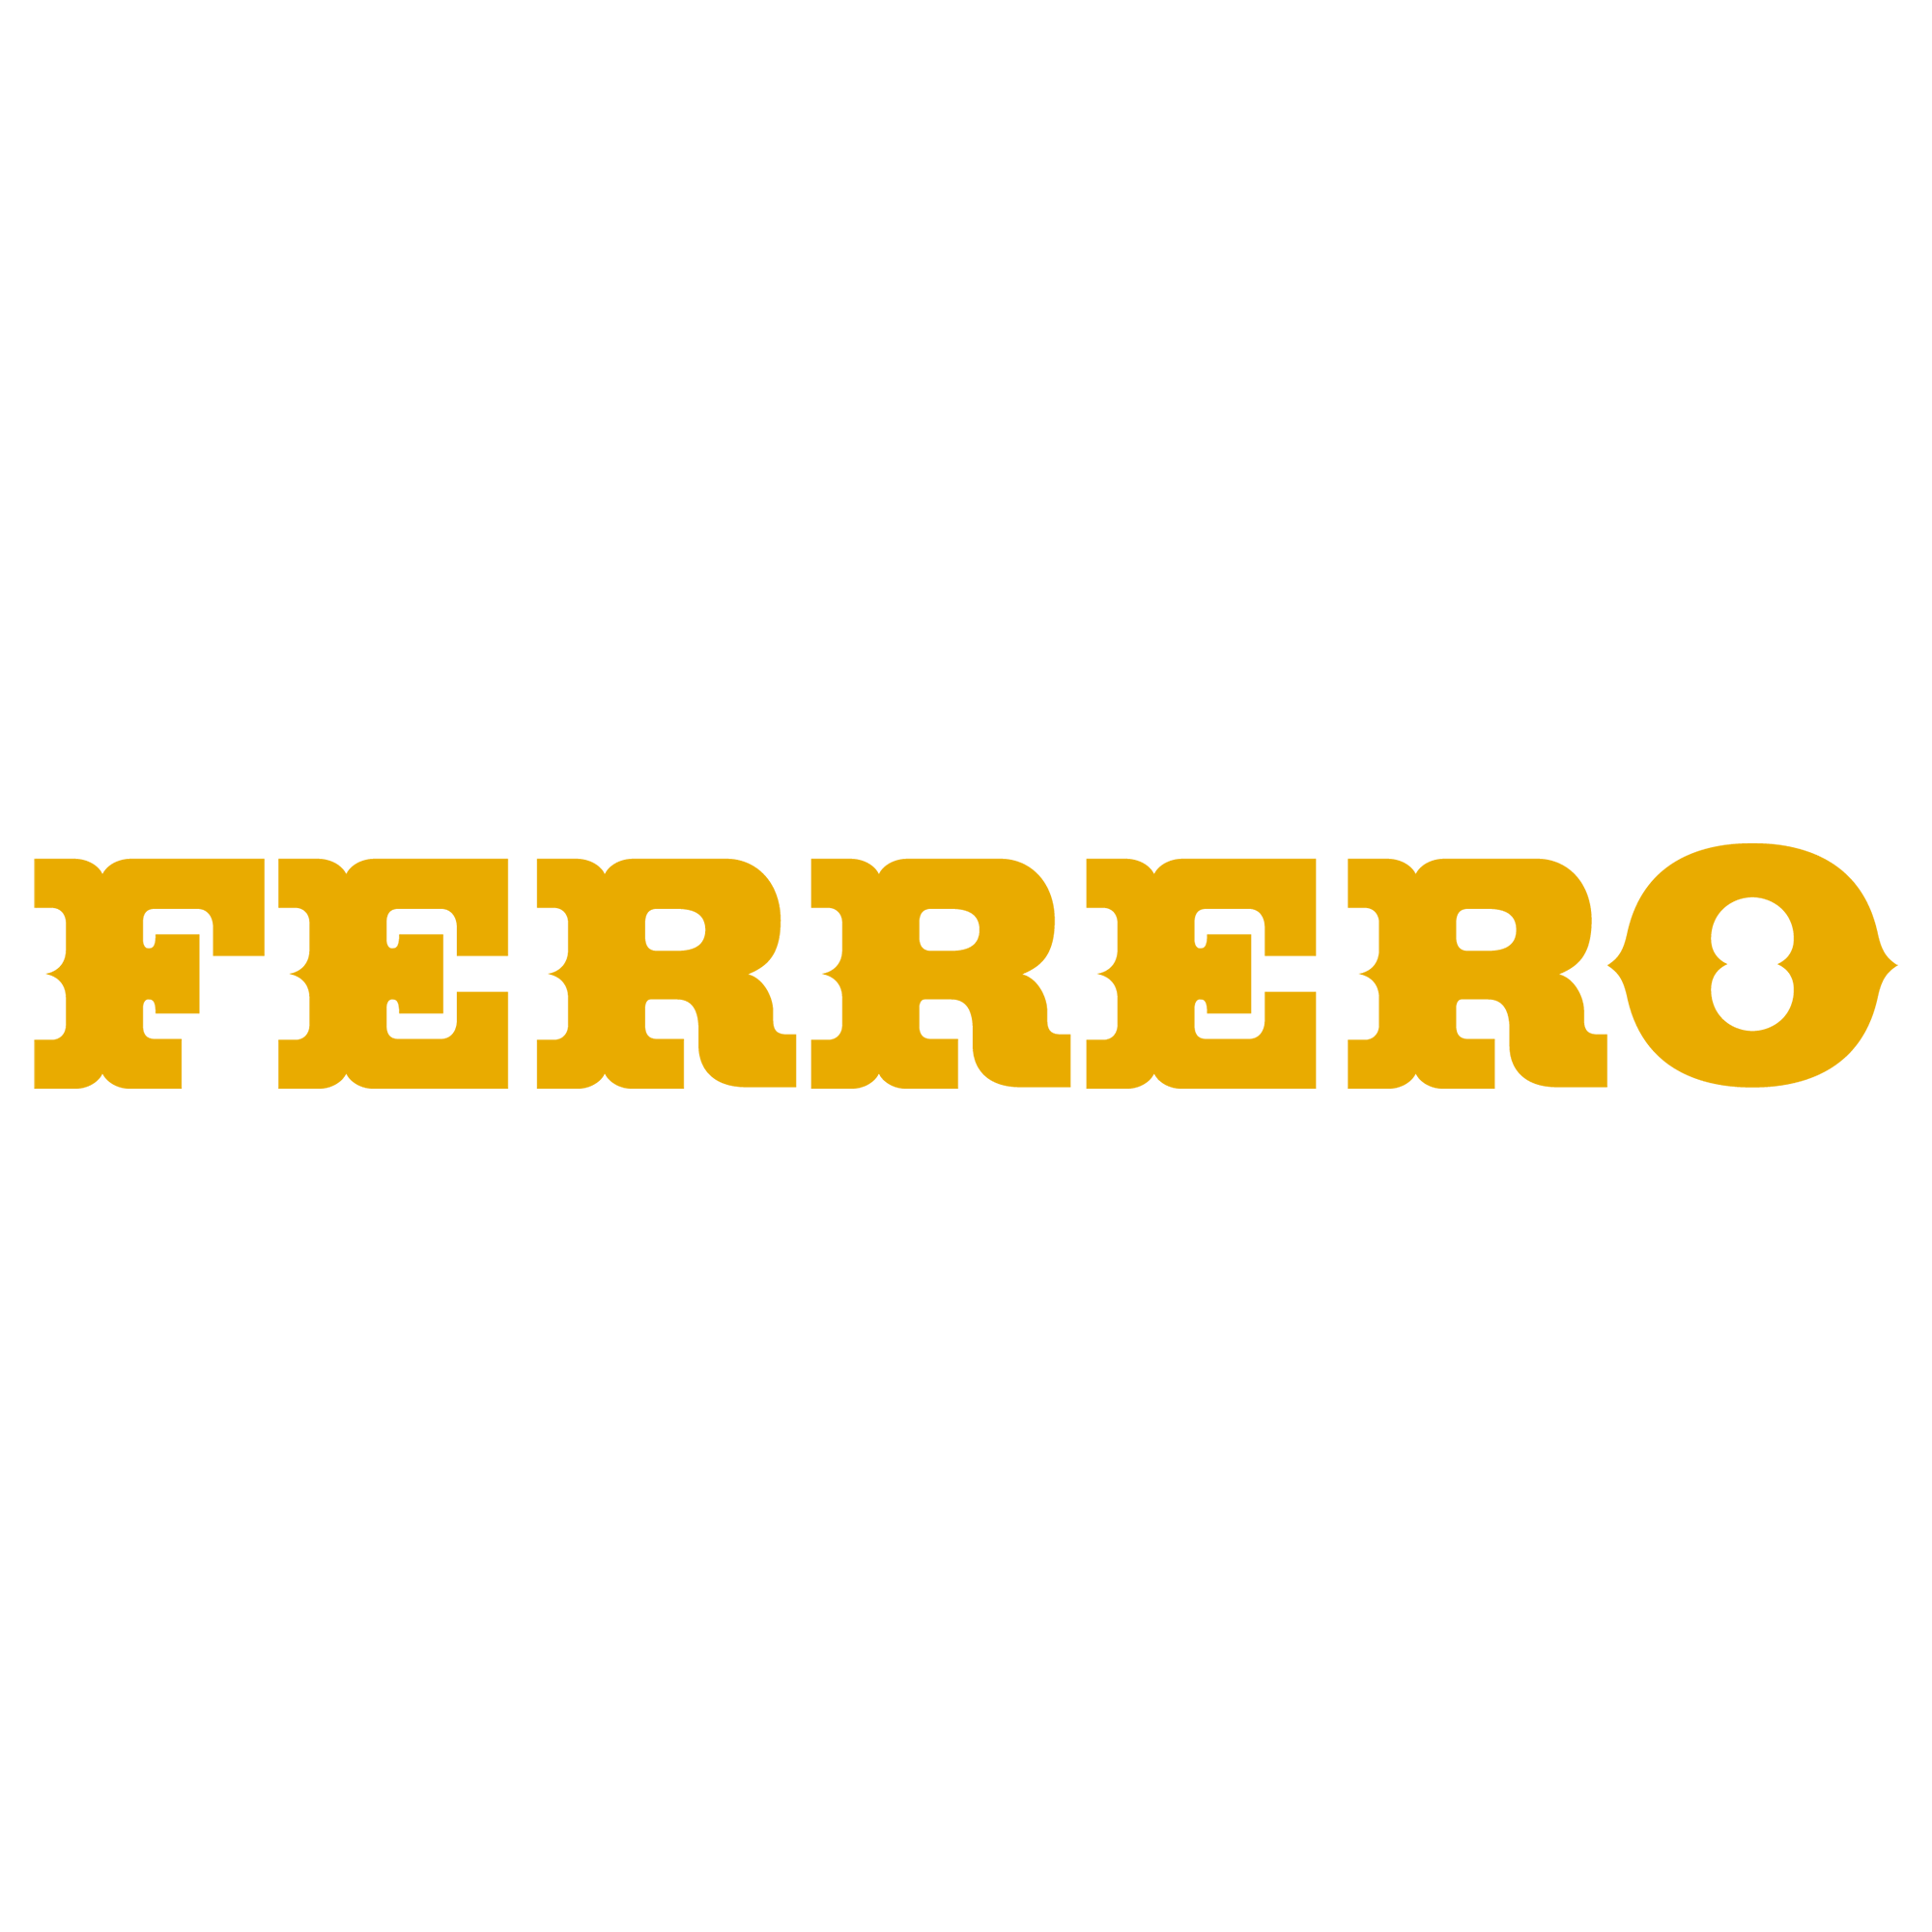 Ferrero en France